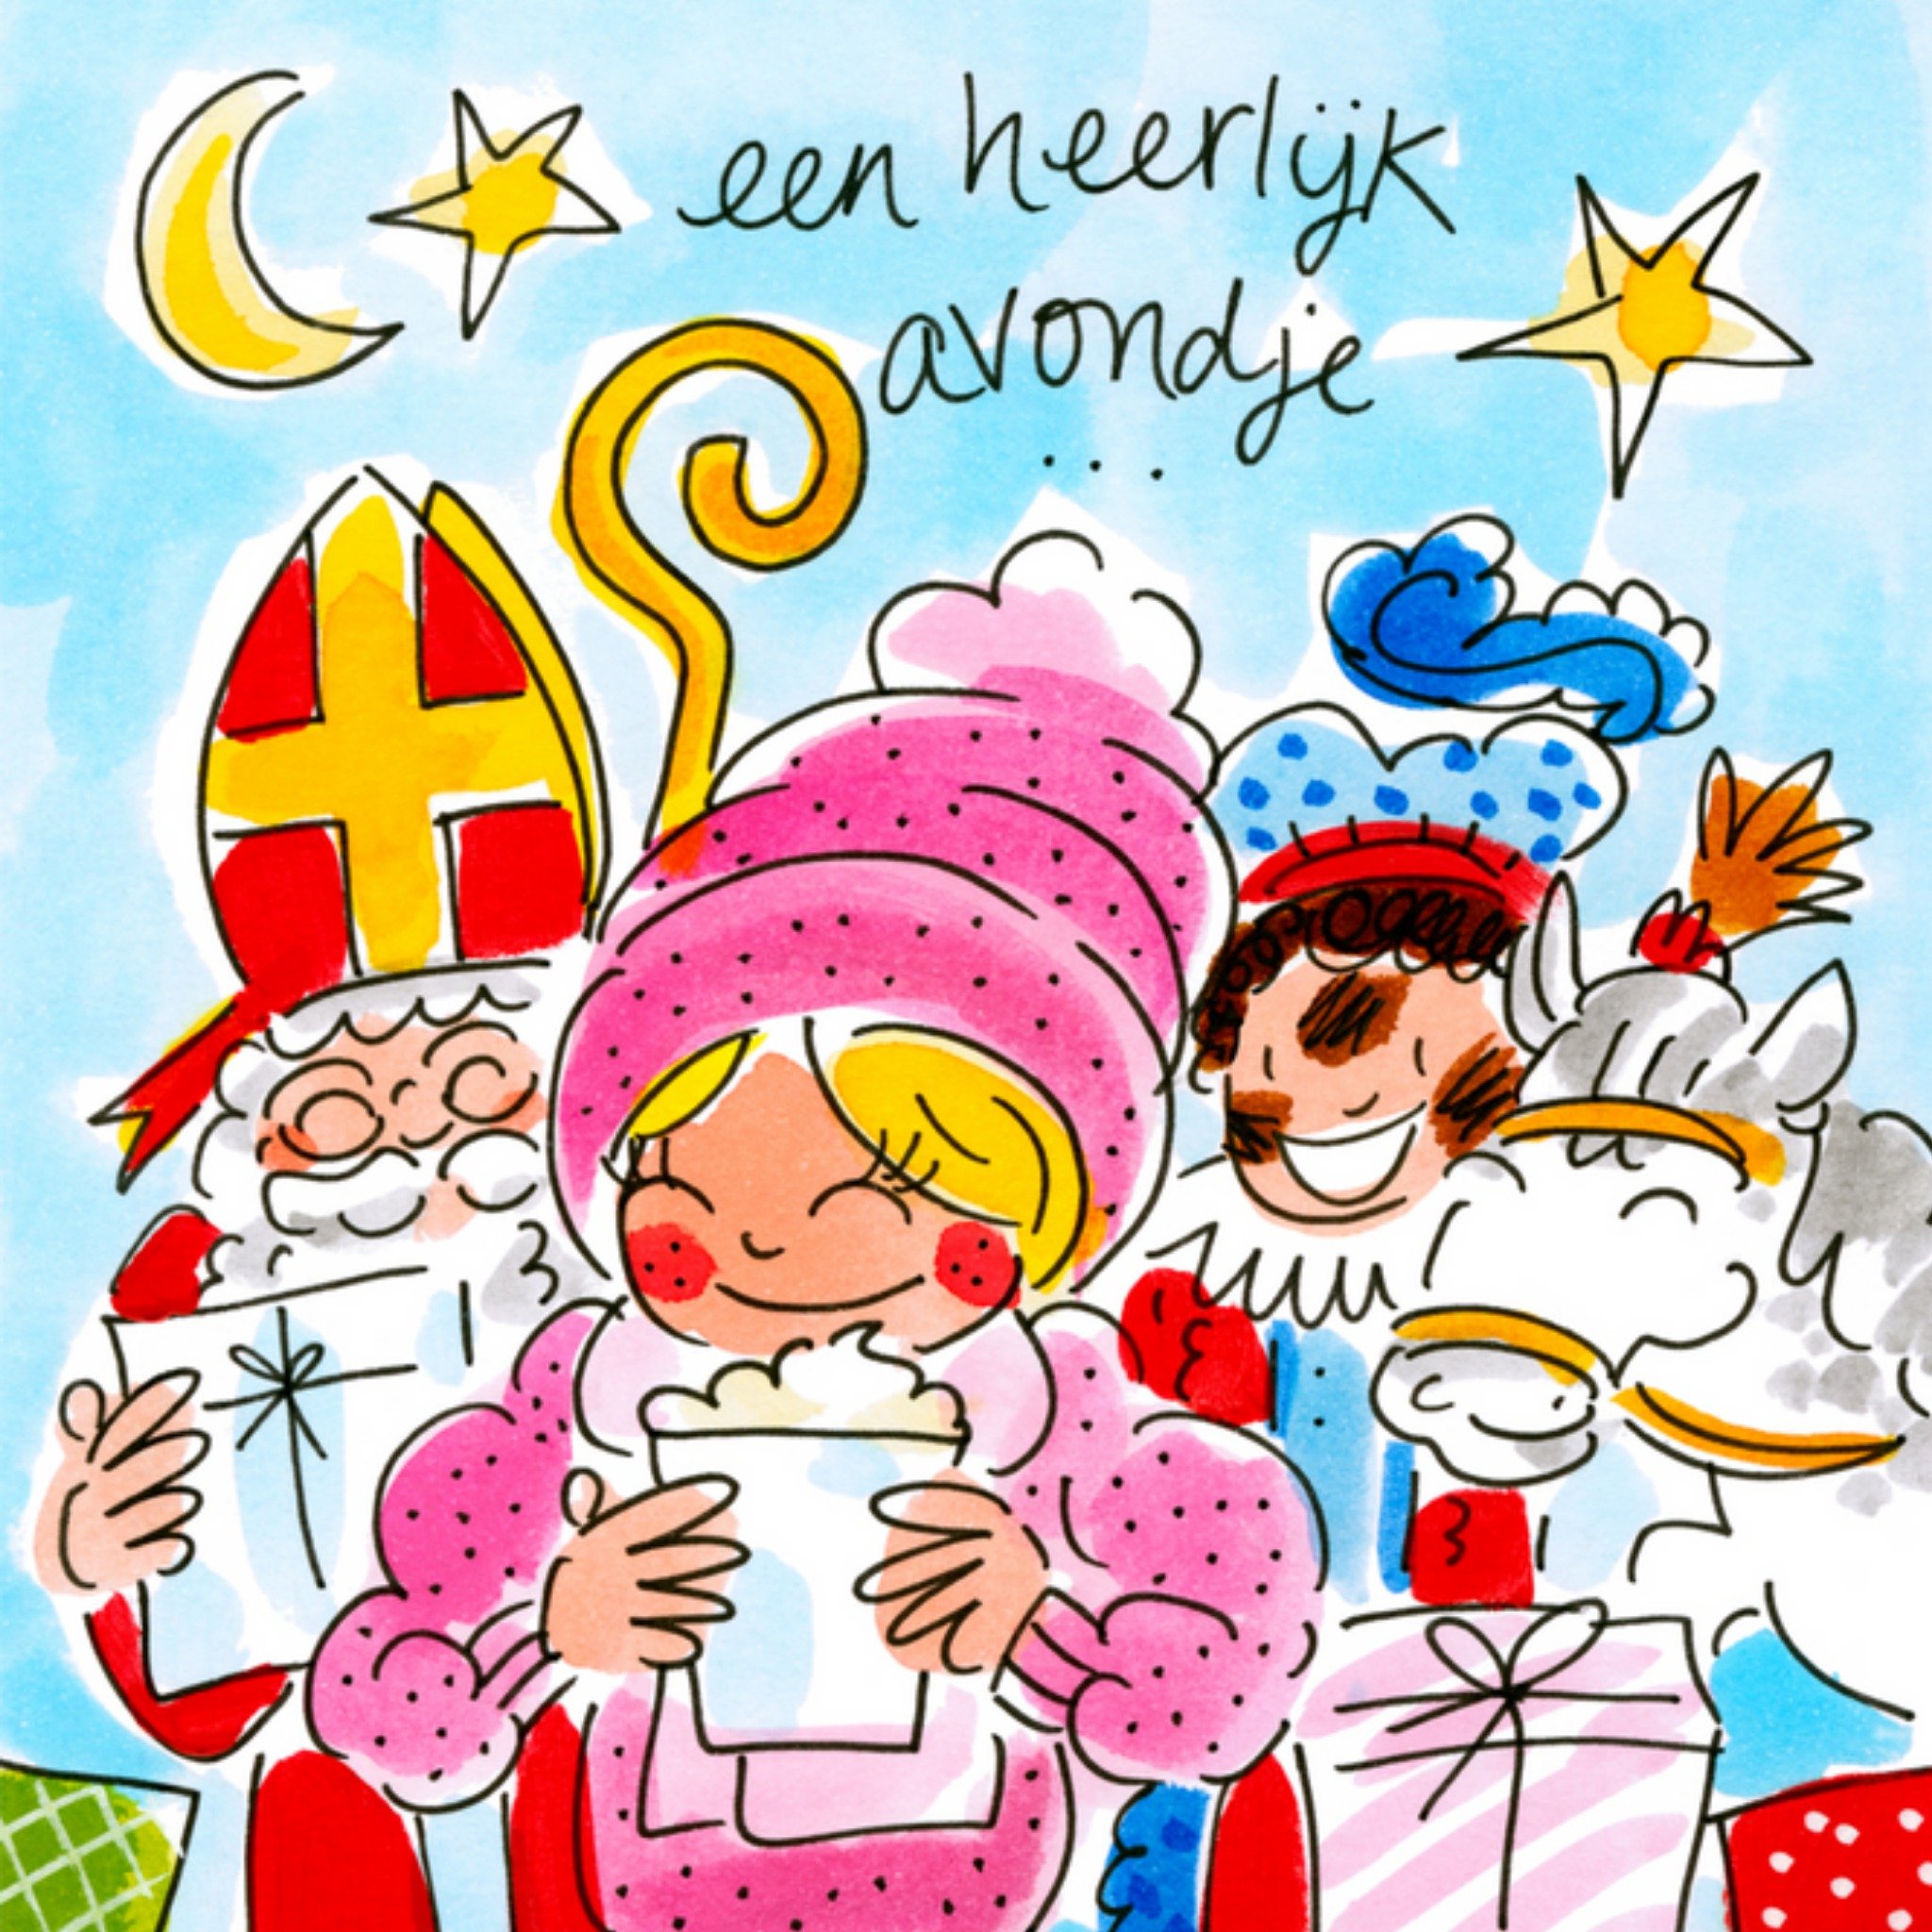 Blond Amsterdam - Sinterklaaskaart - illustratie